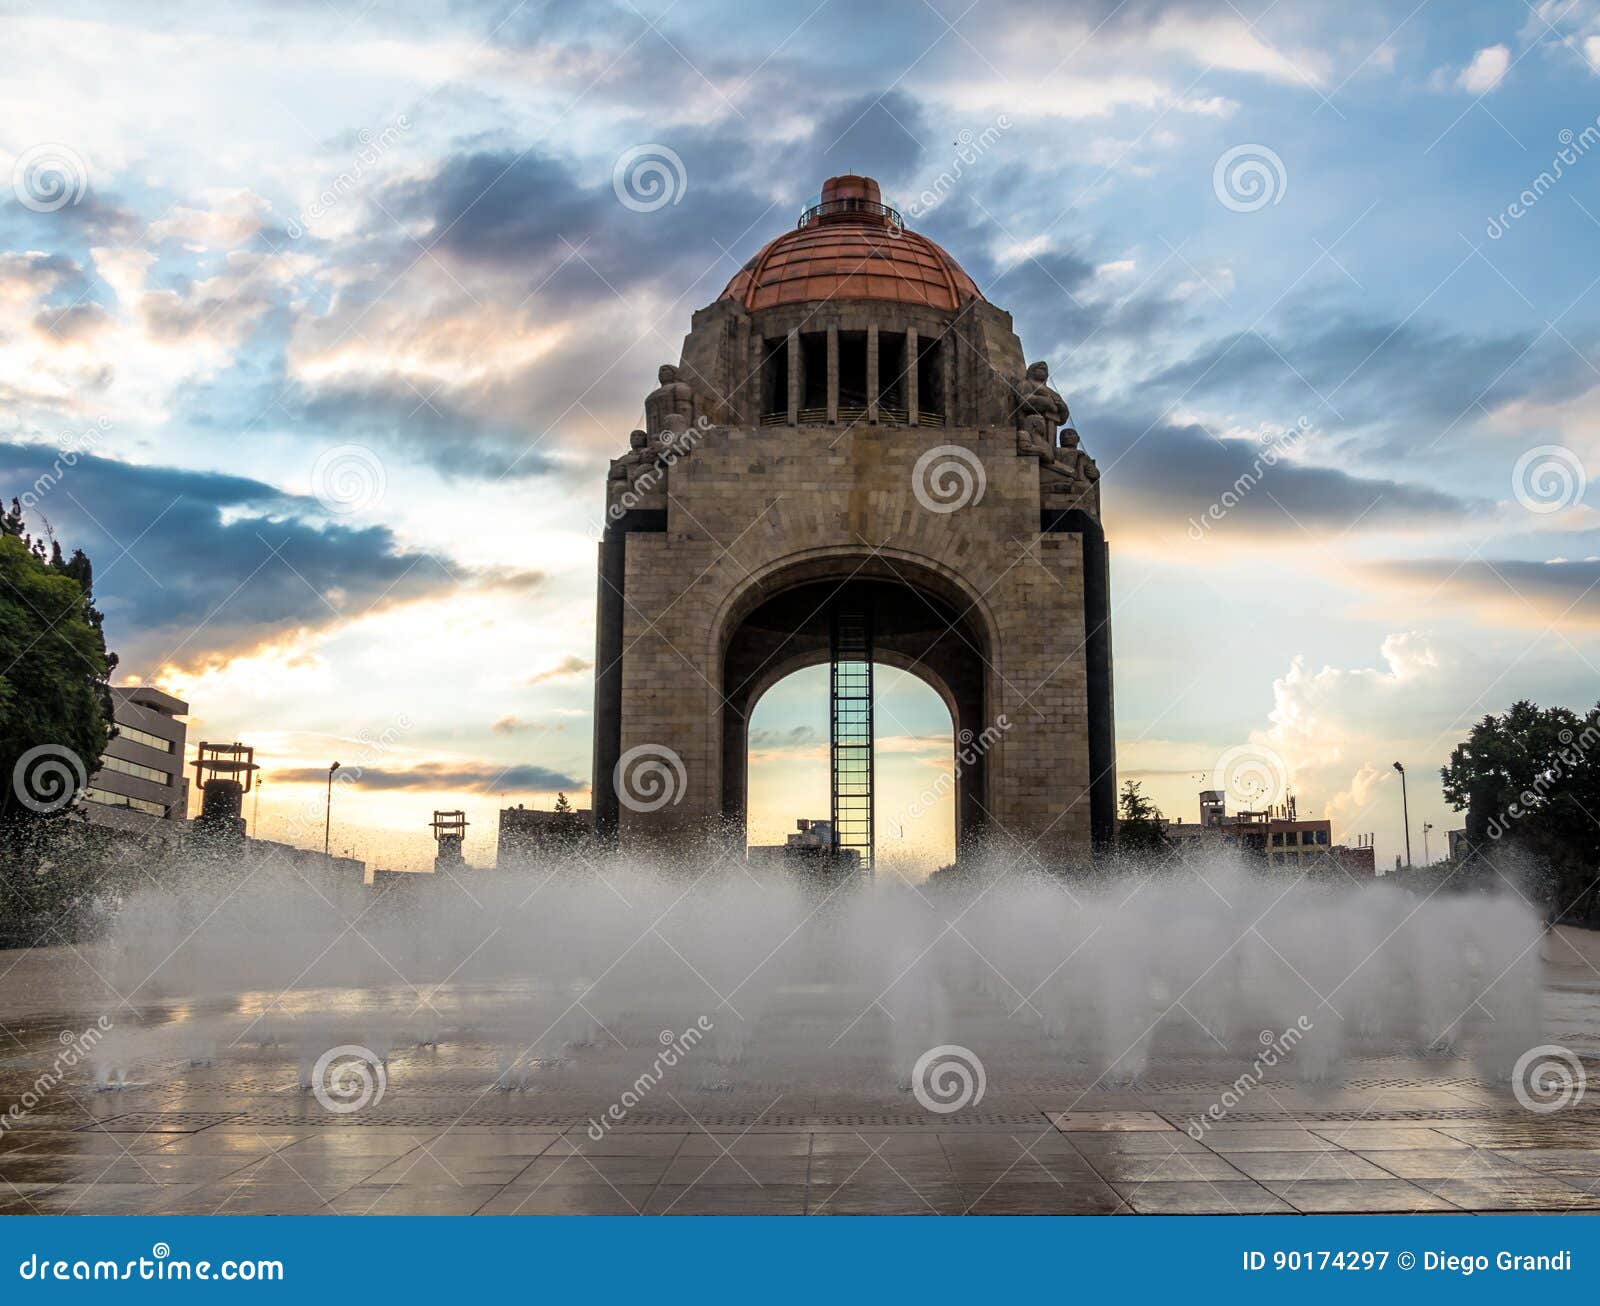 monument to the mexican revolution monumento a la revolucion - mexico city, mexico